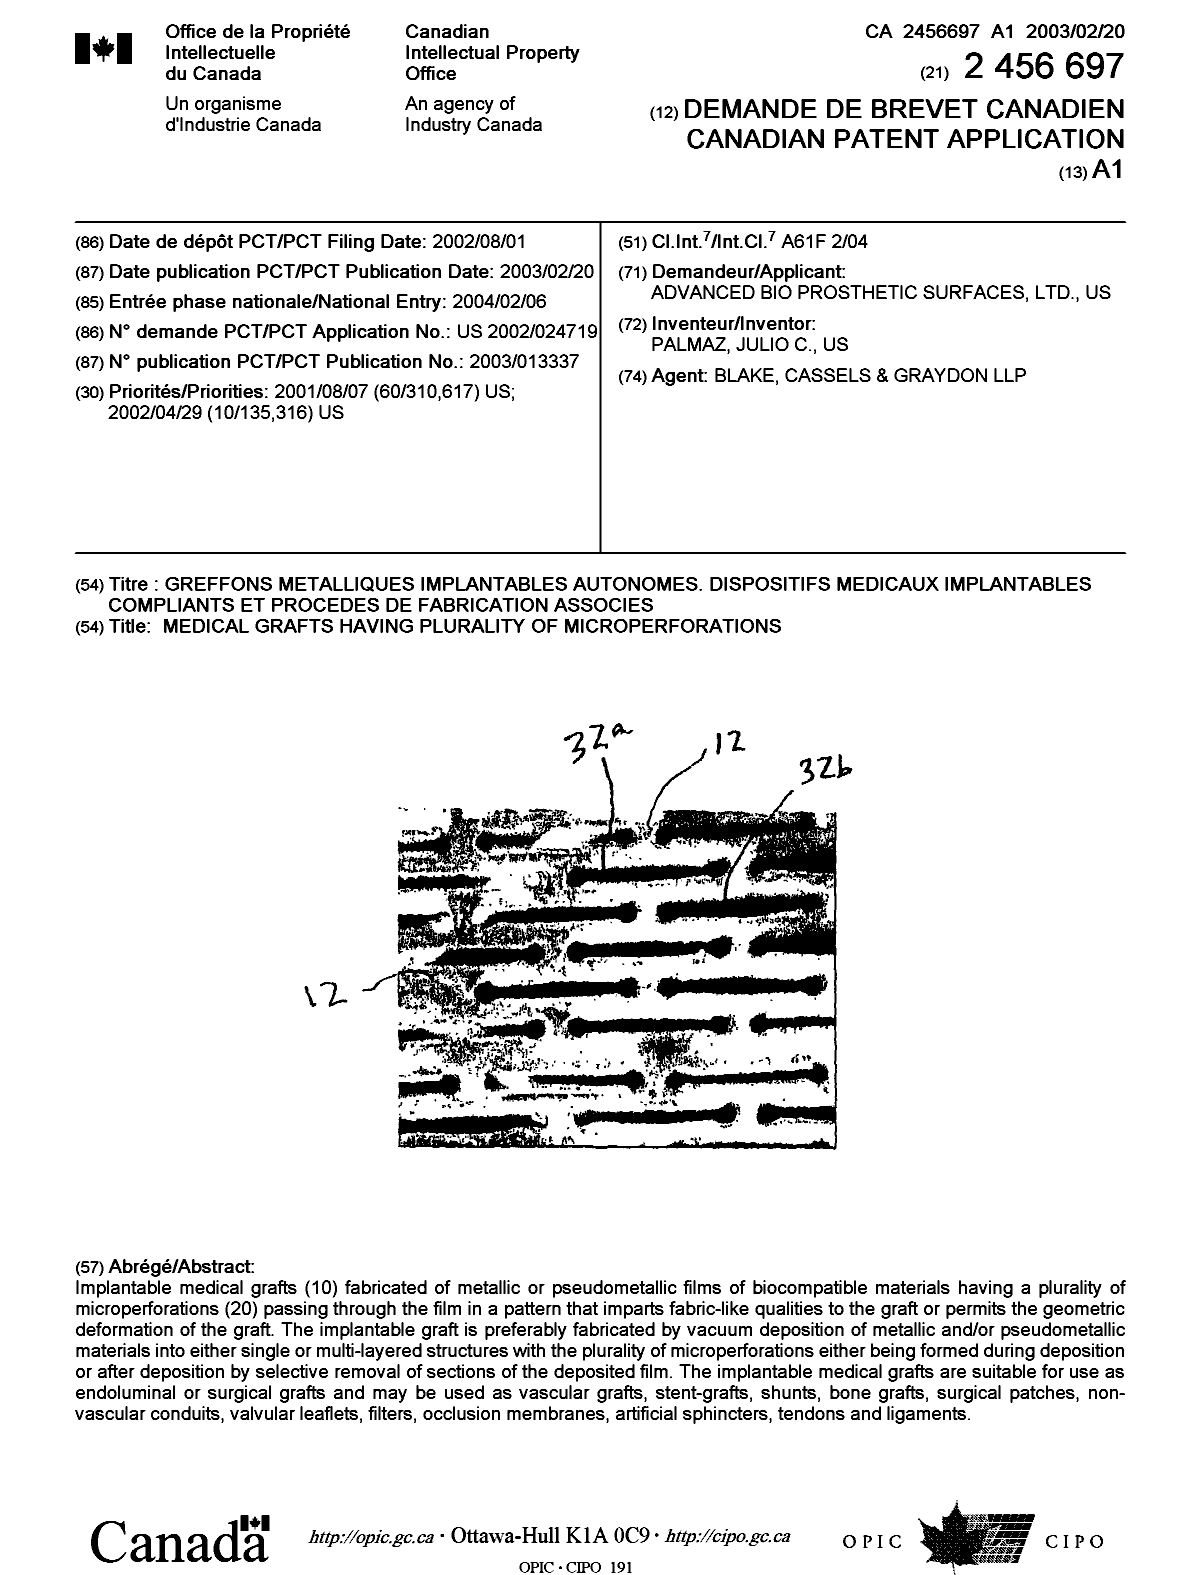 Document de brevet canadien 2456697. Page couverture 20040330. Image 1 de 1